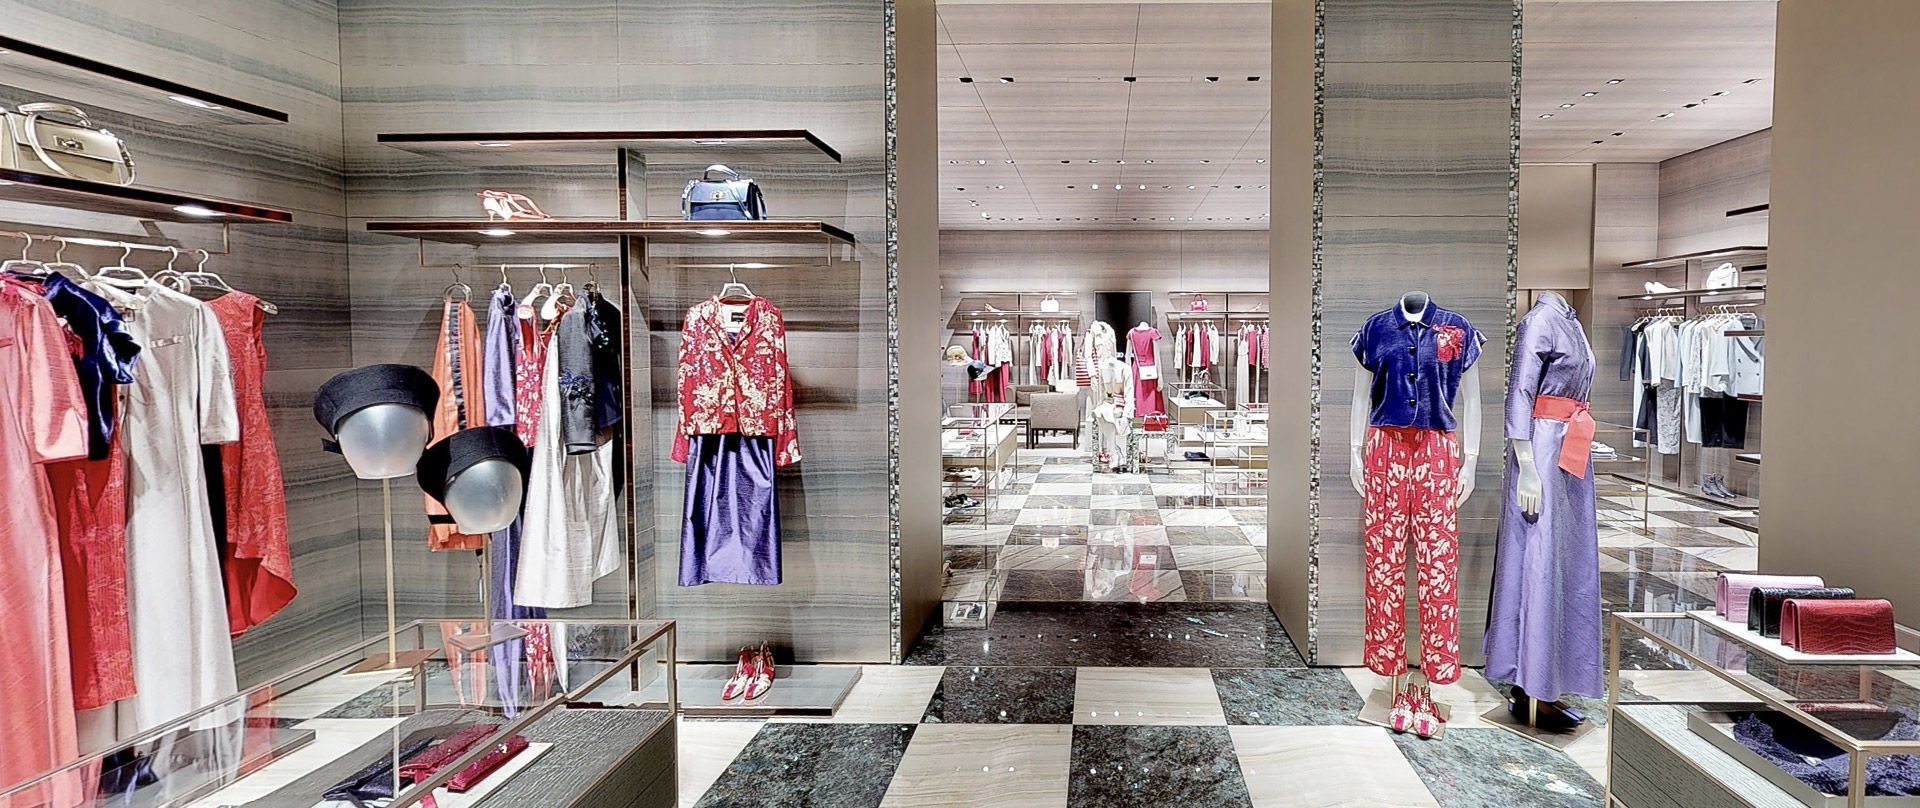 The new Giorgio Armani store in Milan, in Via Sant'Andrea